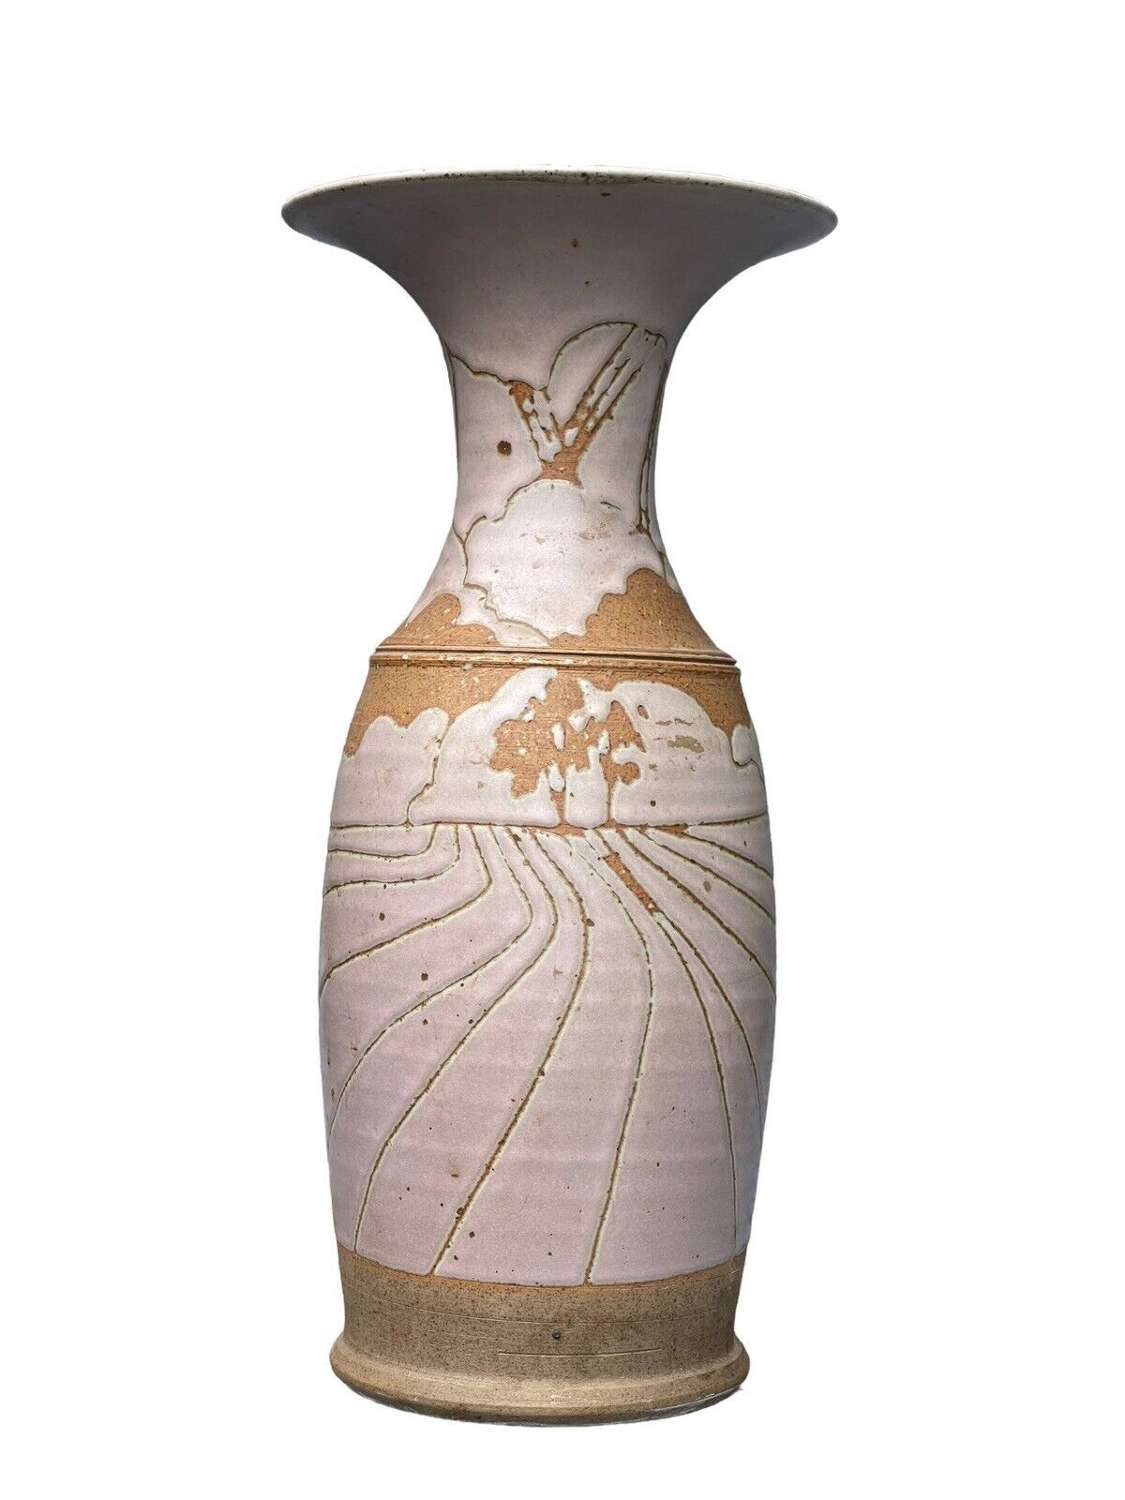 Marie Hamer studio pottery vase